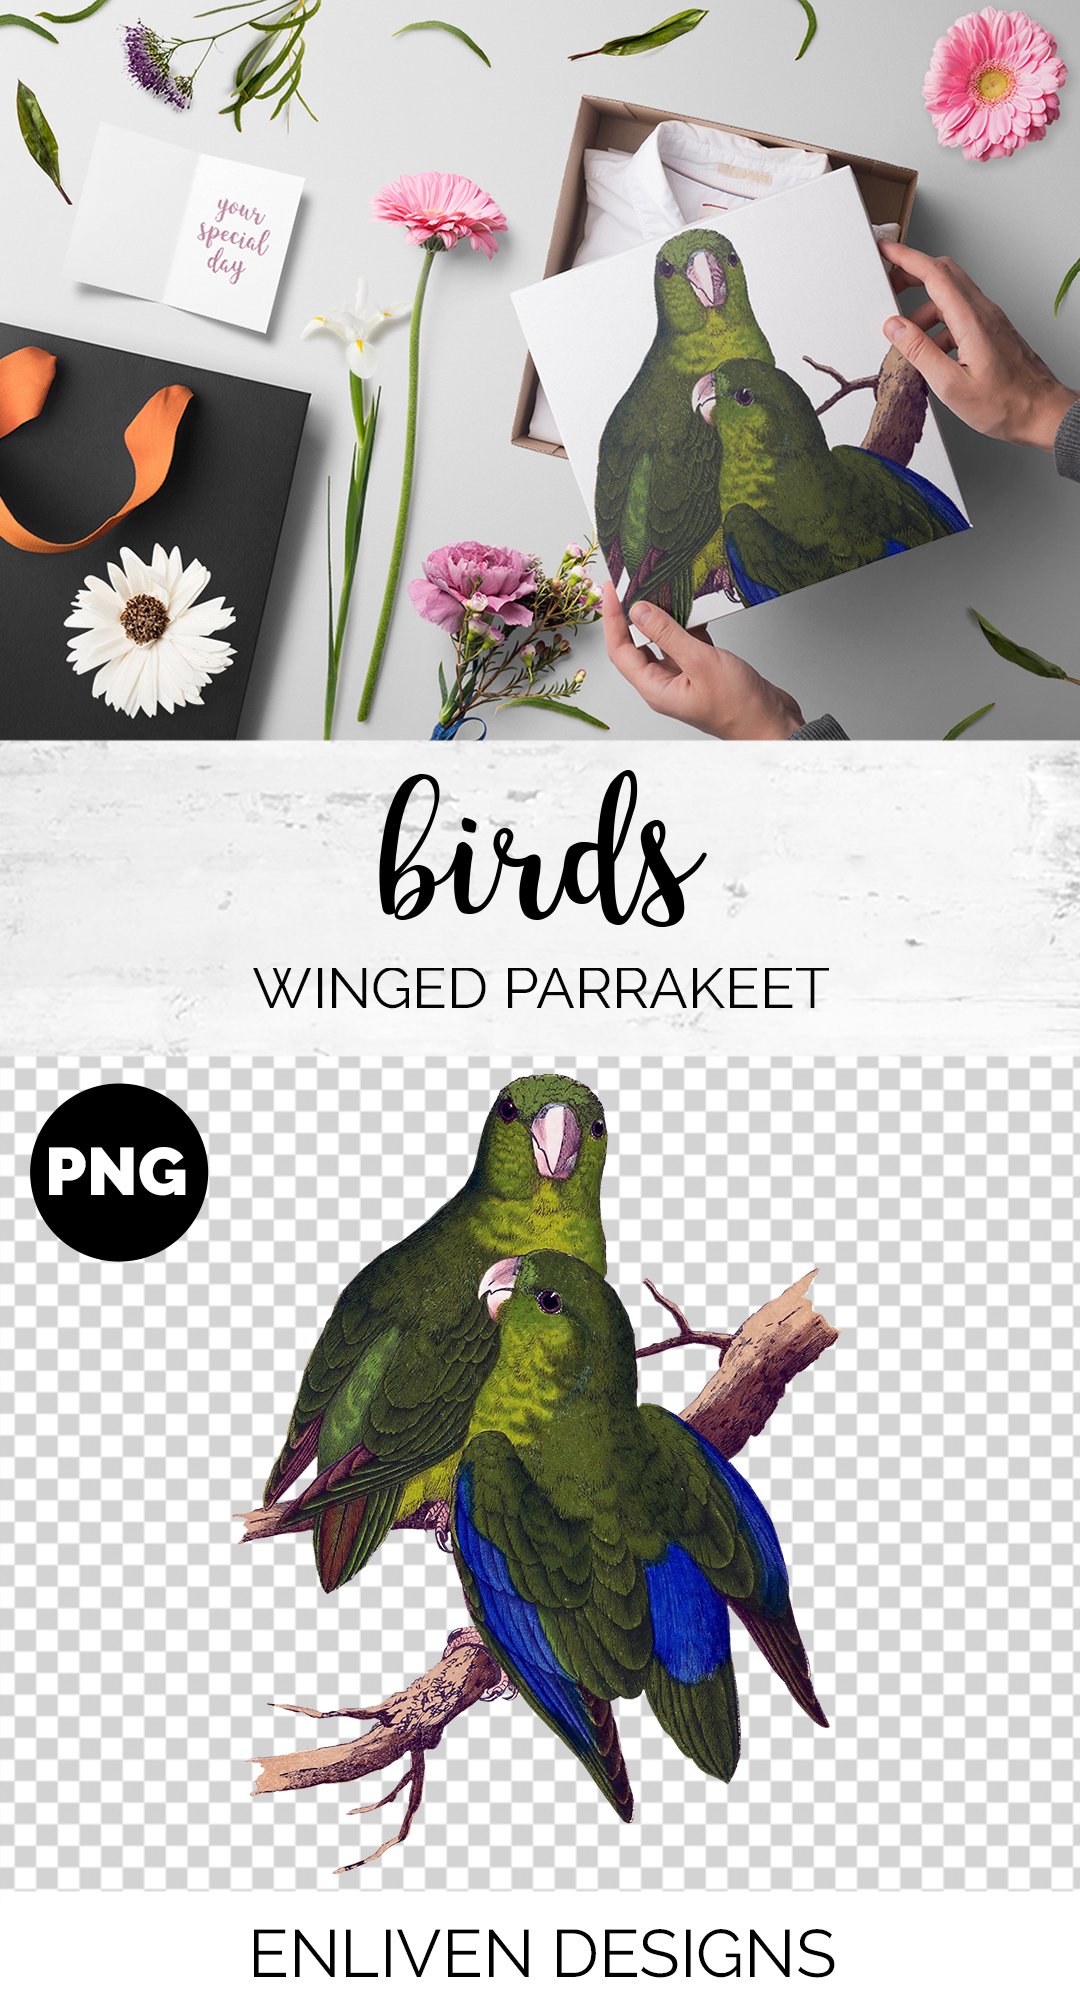 Parrot Parrakeet Parrot preview image.